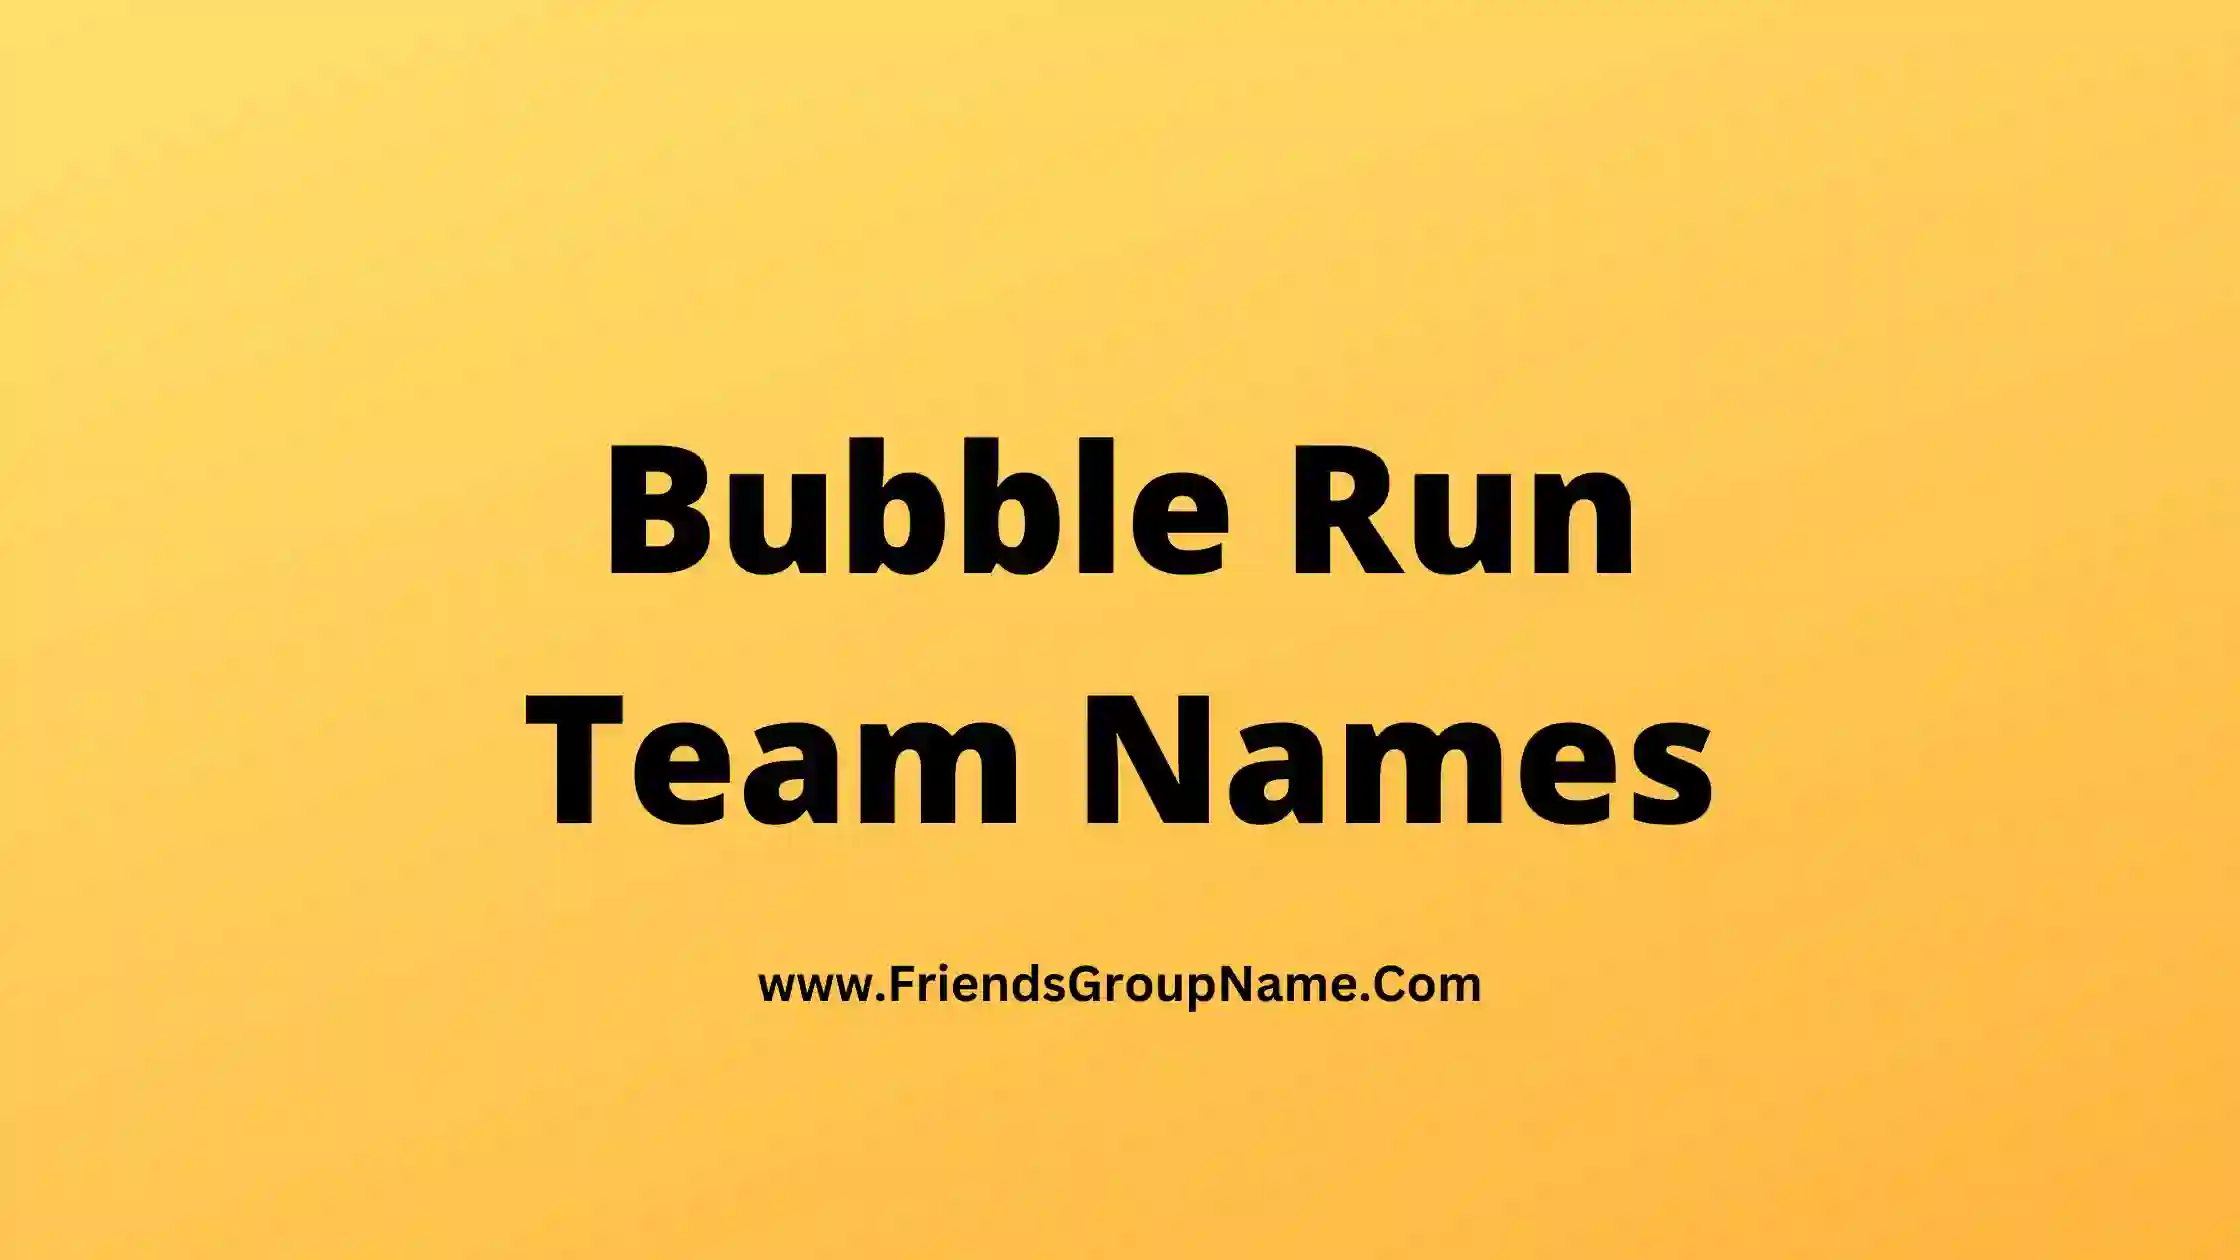 Bubble Run Team Names